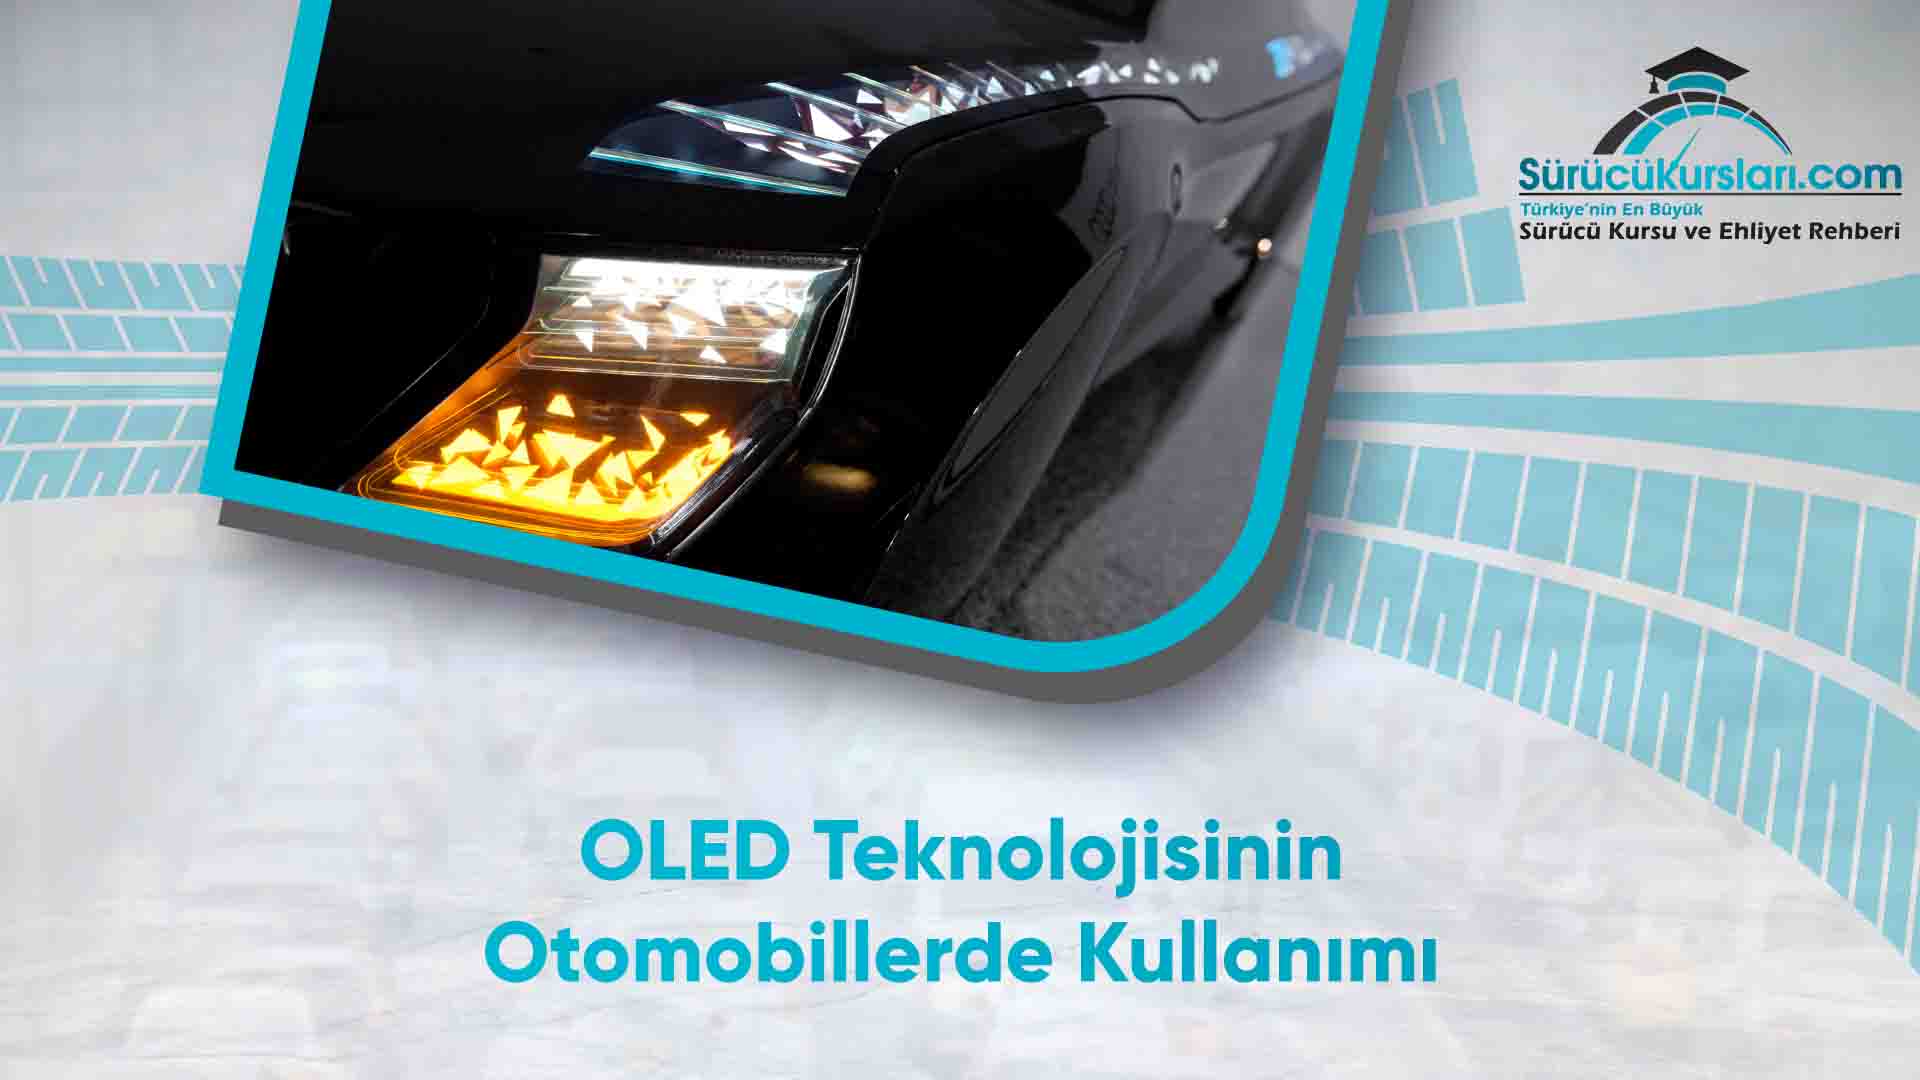 OLED Teknolojisinin Otomobillerde Kullanımı